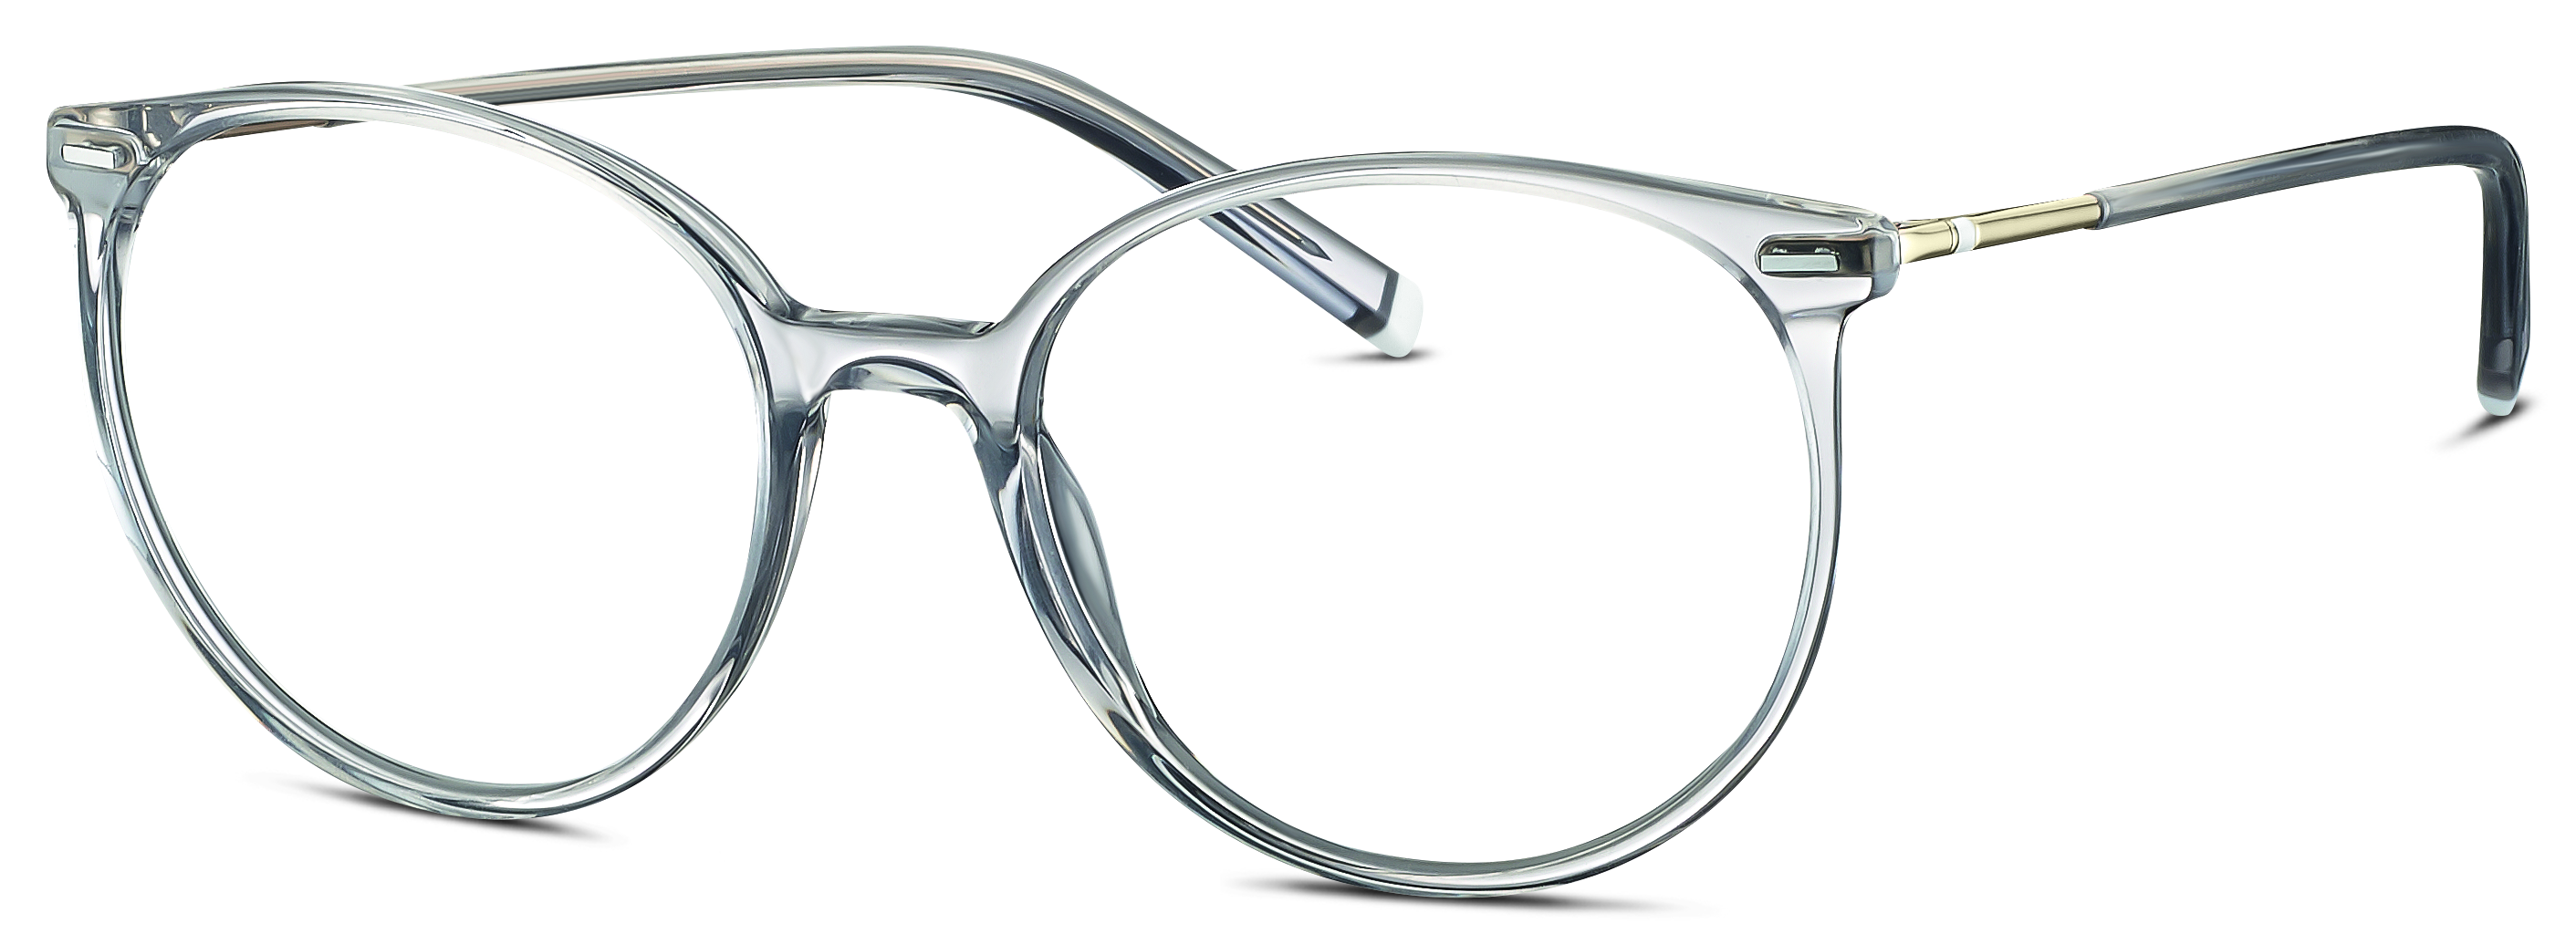 Das Bild zeigt die Korrektionsbrille 583120 30 von der Marke Humphreys in grau transparent.